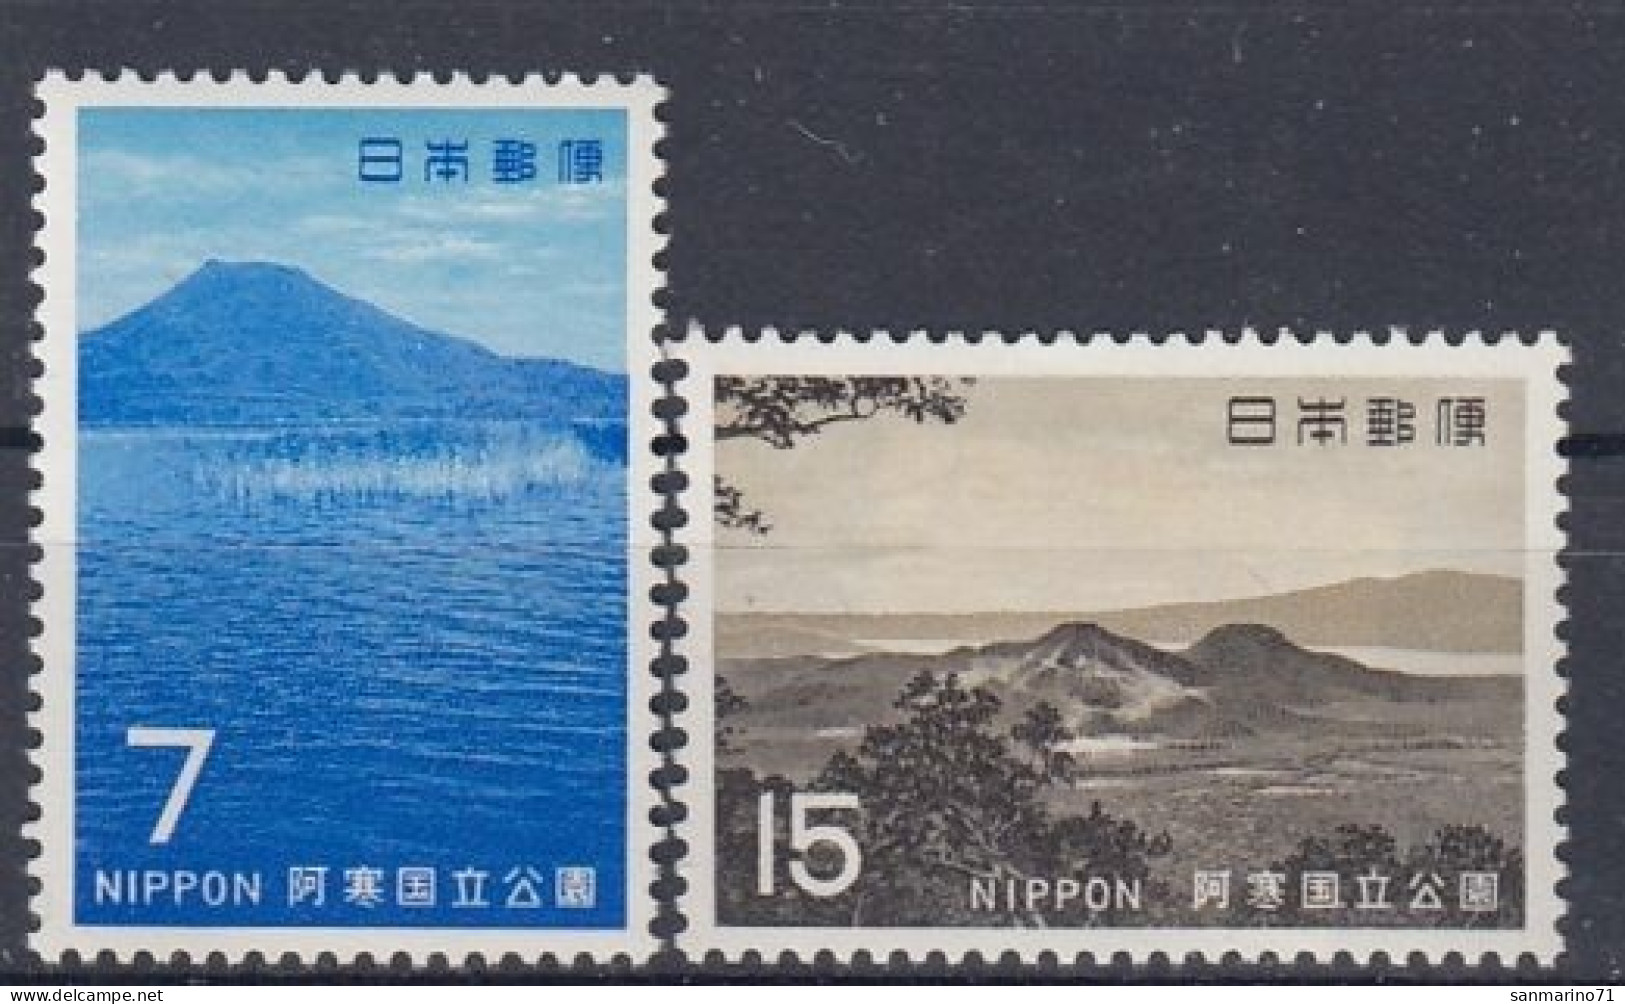 JAPAN 1052-1053,unused - Mountains